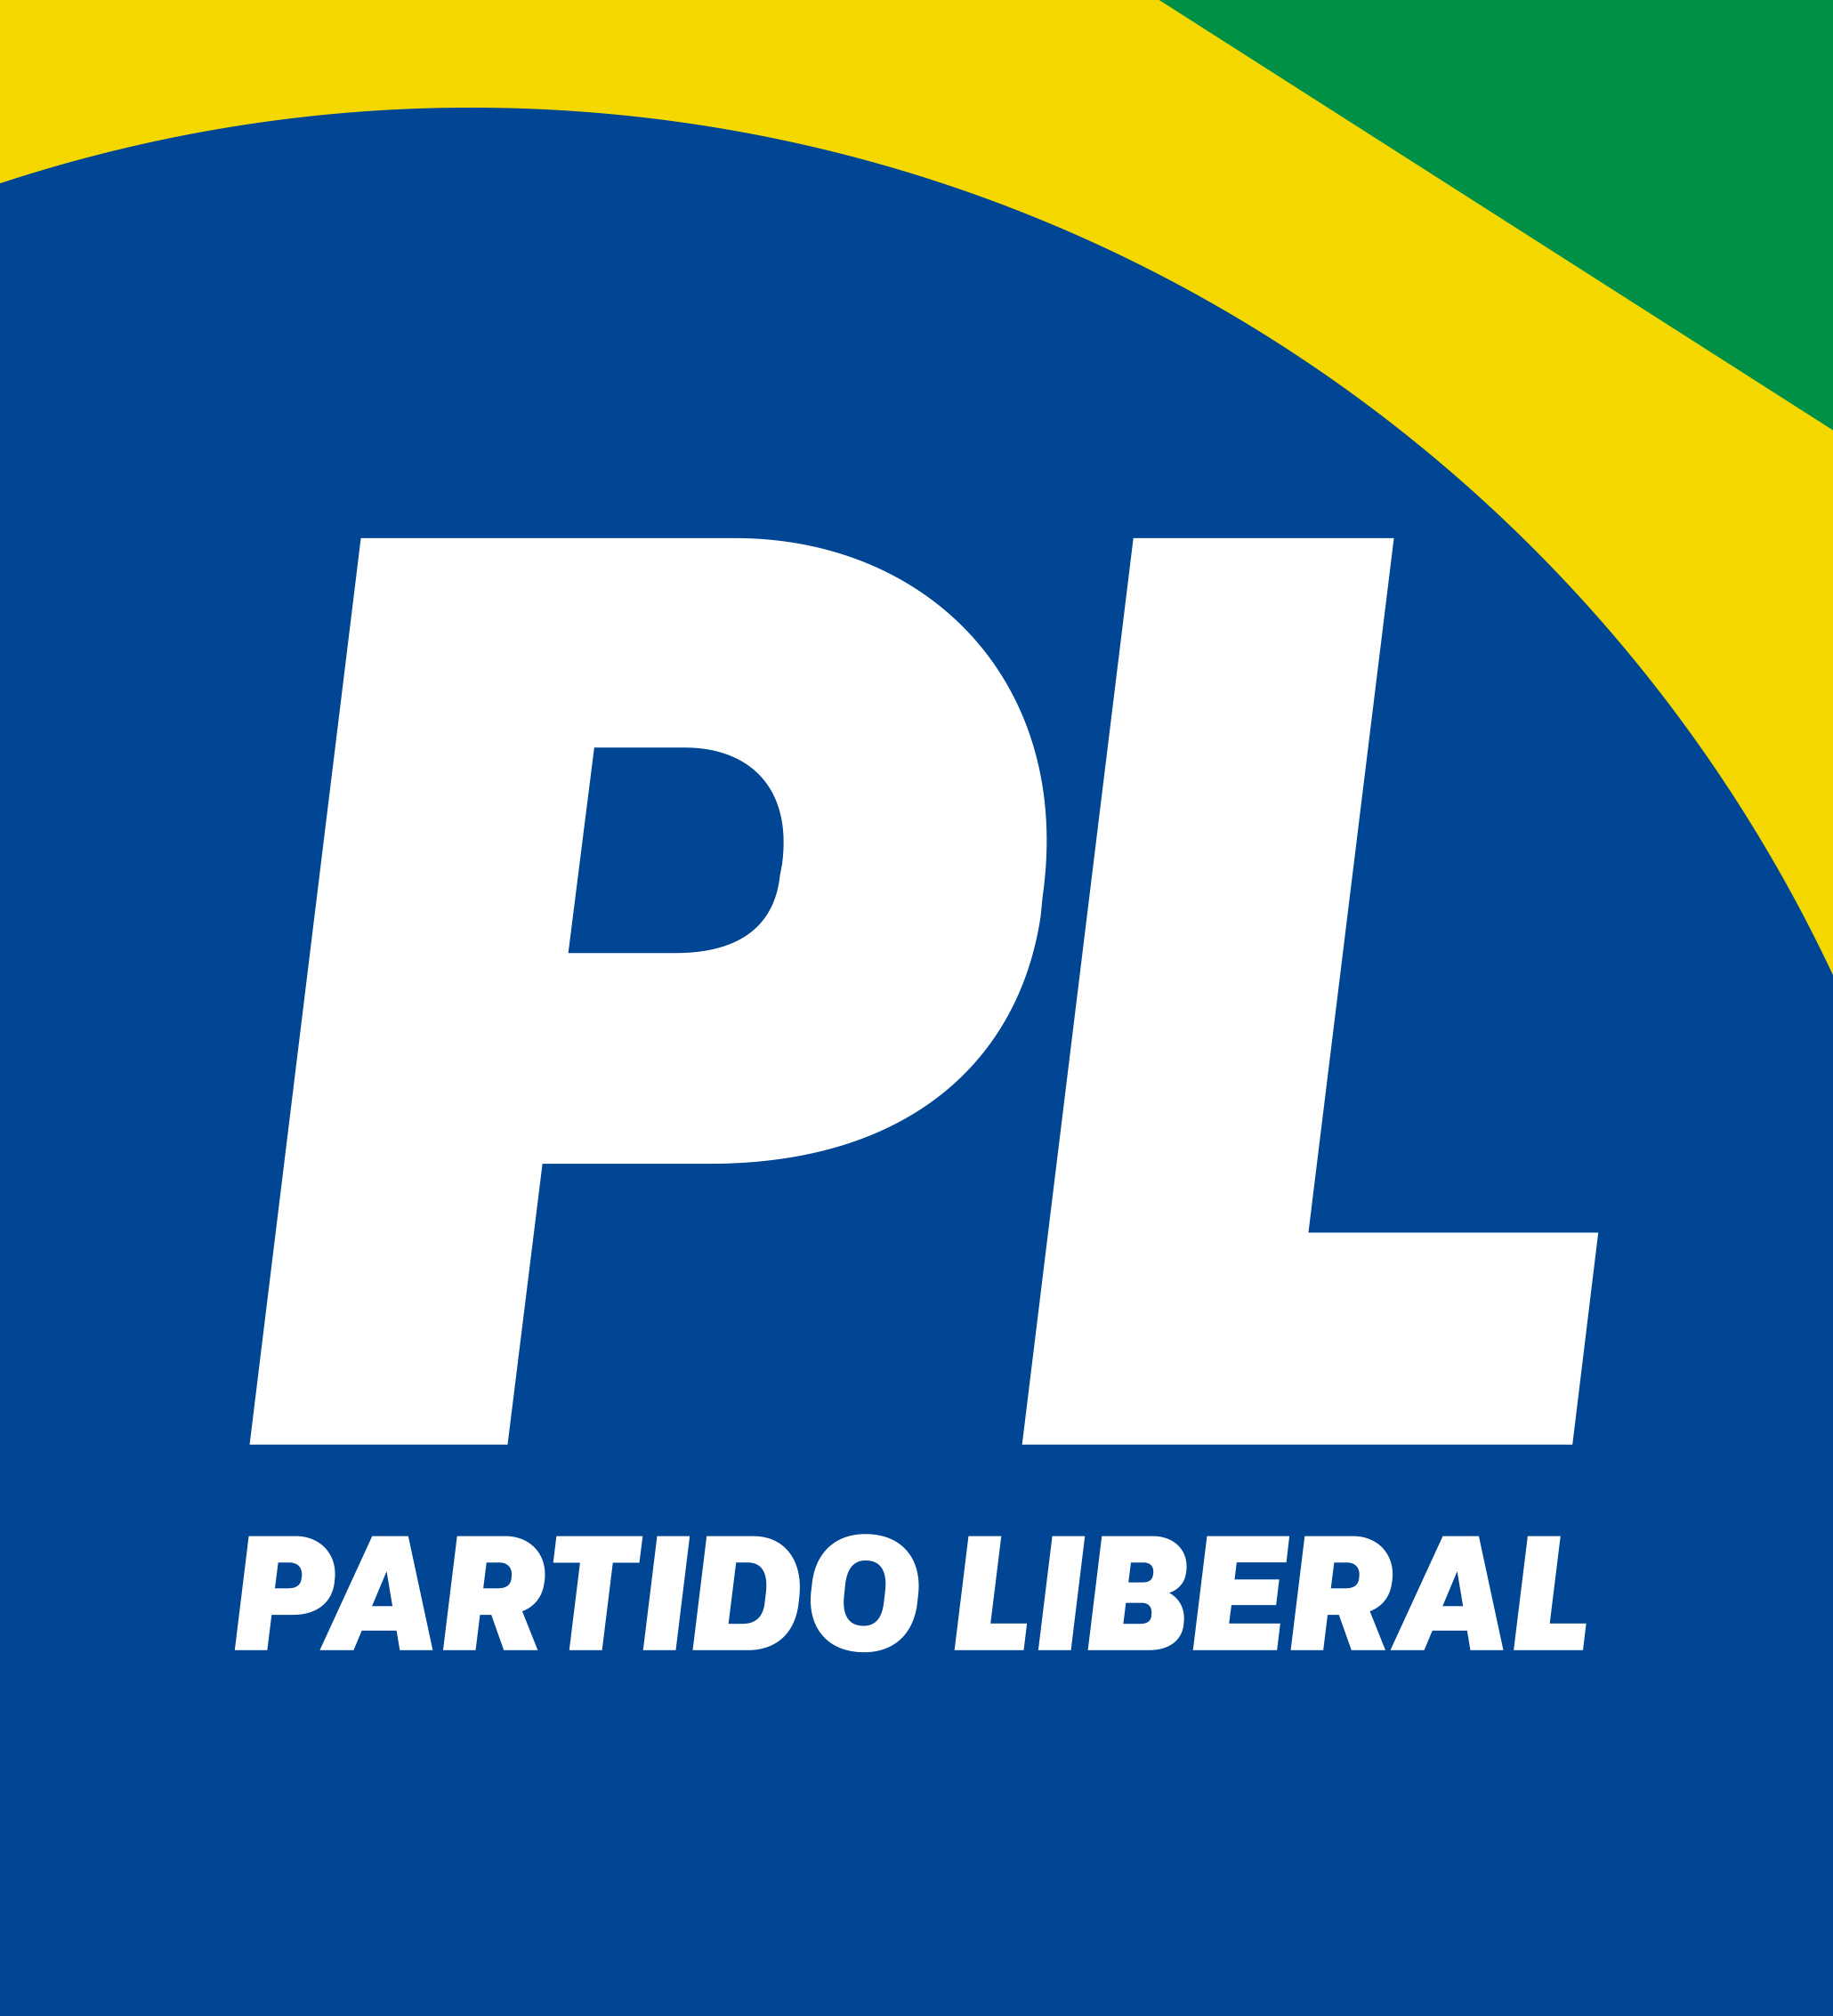 Eduardo Bolsonaro, Bia Kicis e mais deputados se filiam ao Partido Liberal